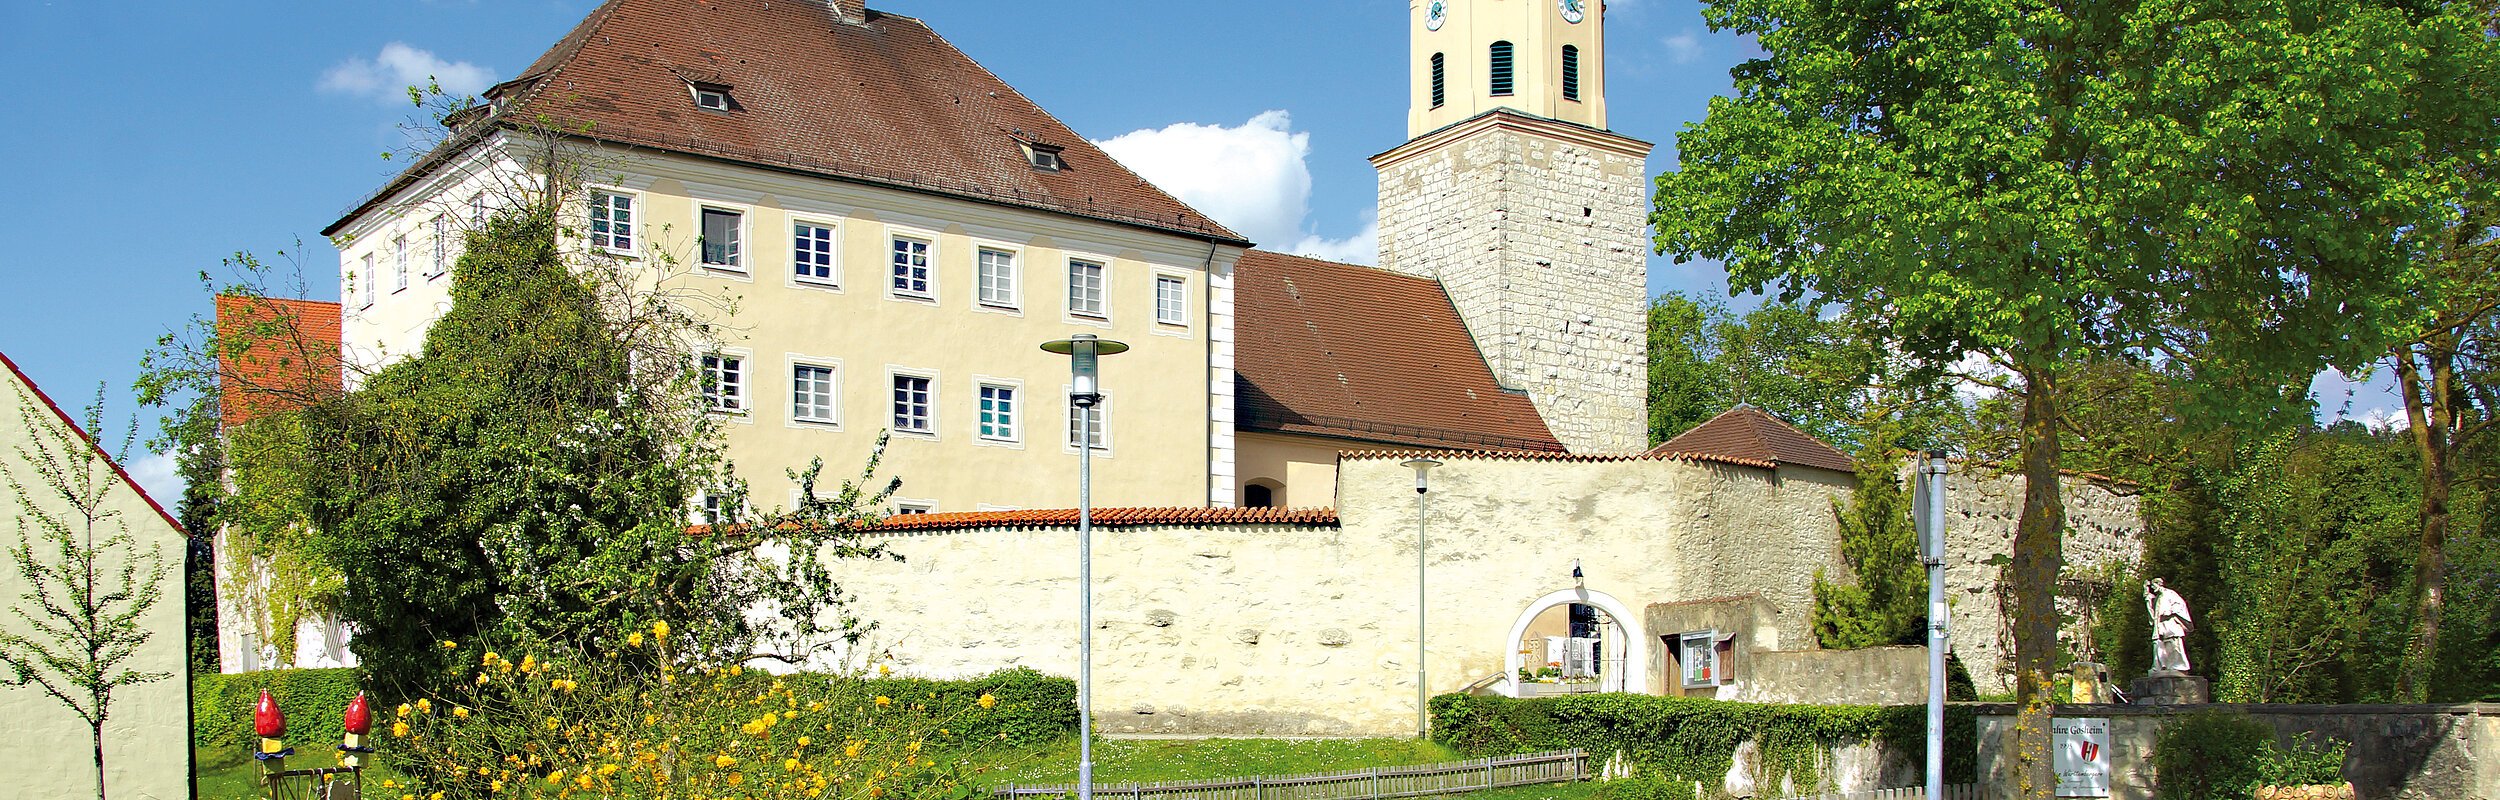 Ehemaliges Schloss in Gosheim